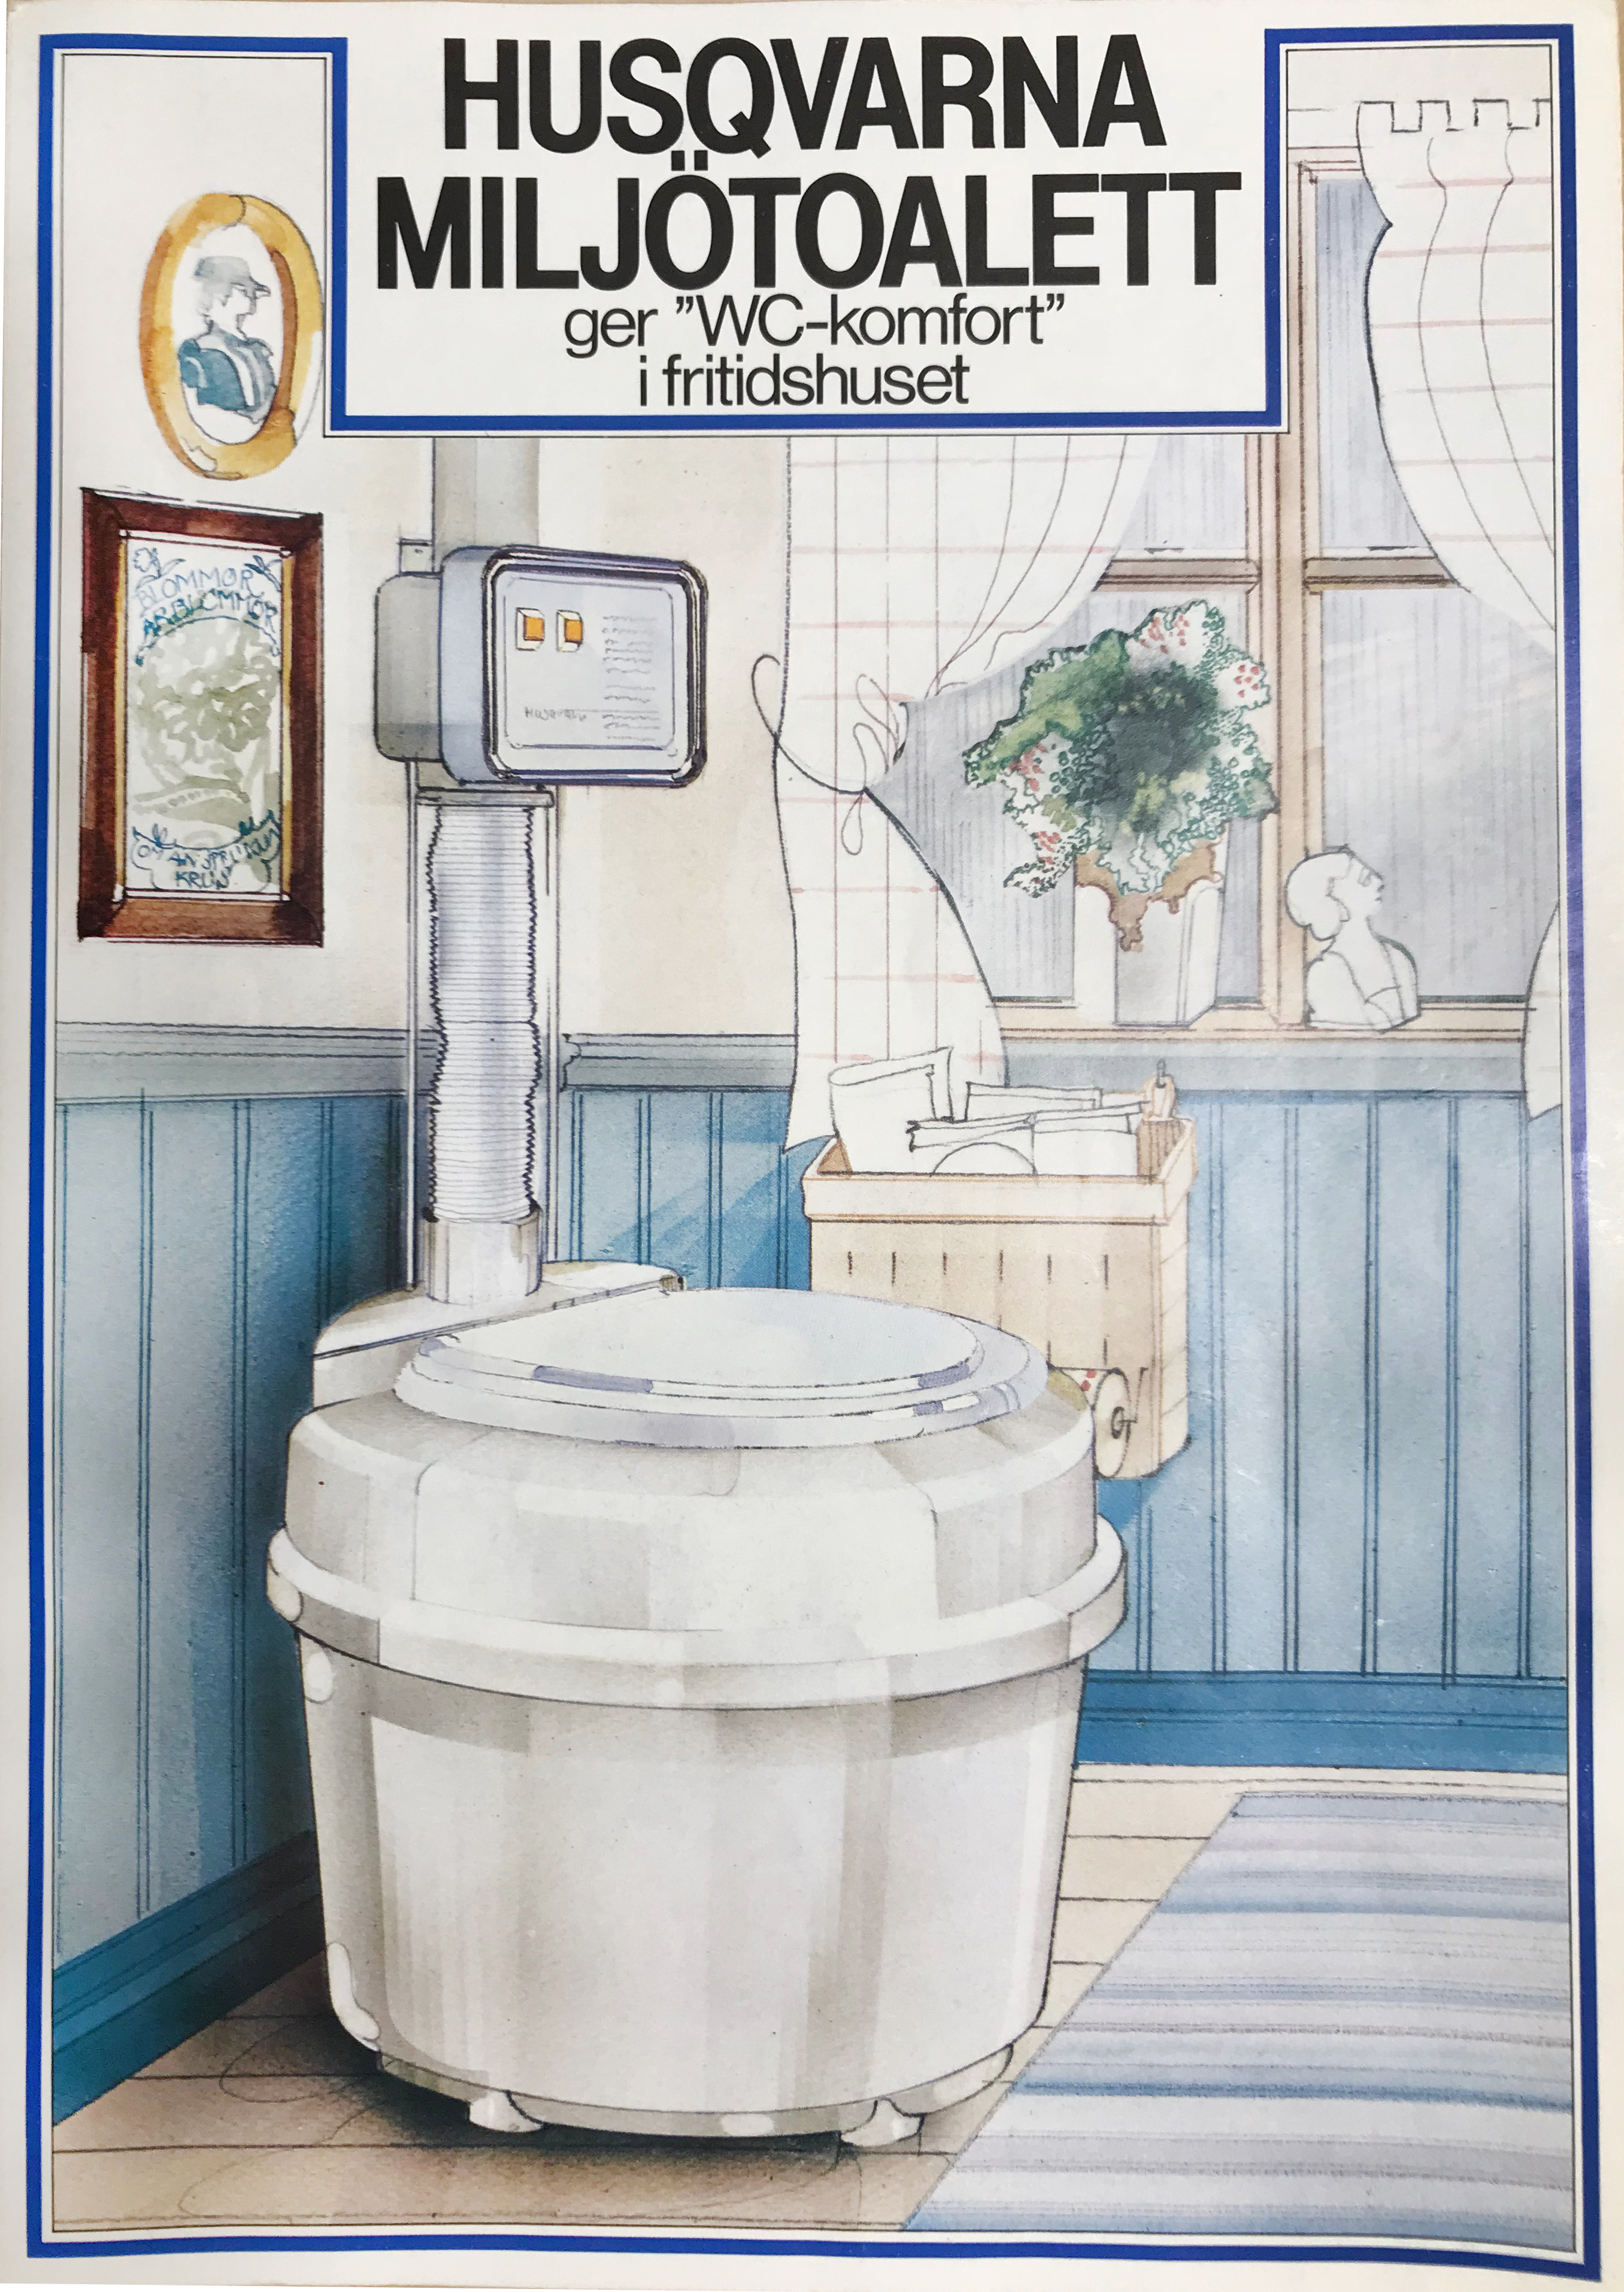 Separett's first waterless toilet Classic 3000